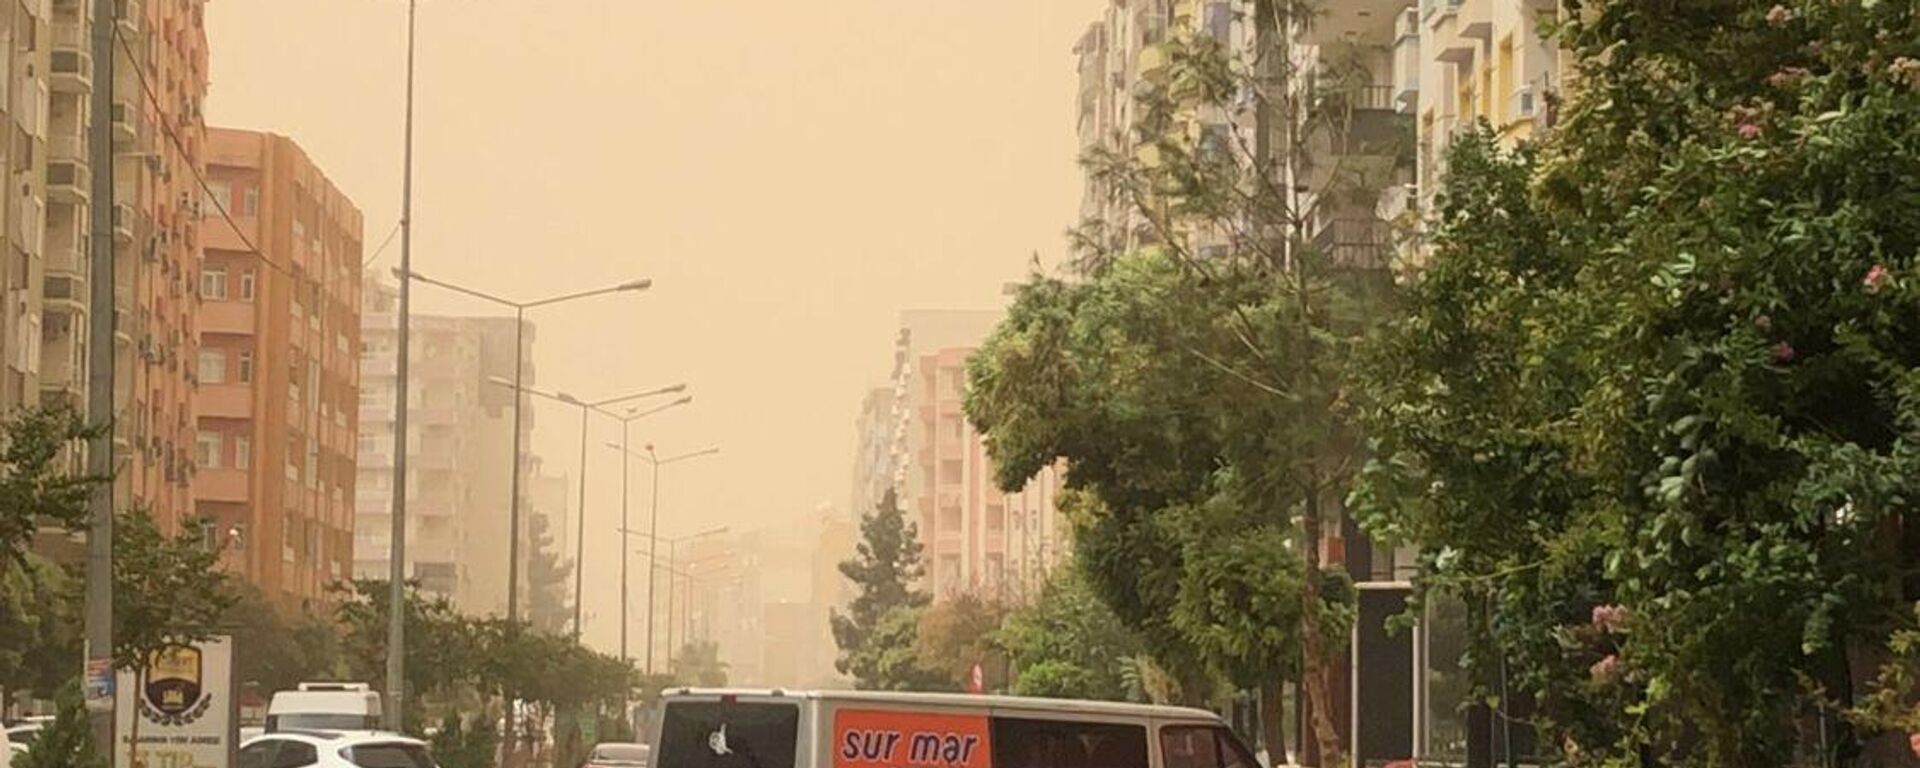 Mardin’de Suriye'den gelen toz bulutu, hayatı olumsuz etkiledi - Sputnik Türkiye, 1920, 23.08.2021